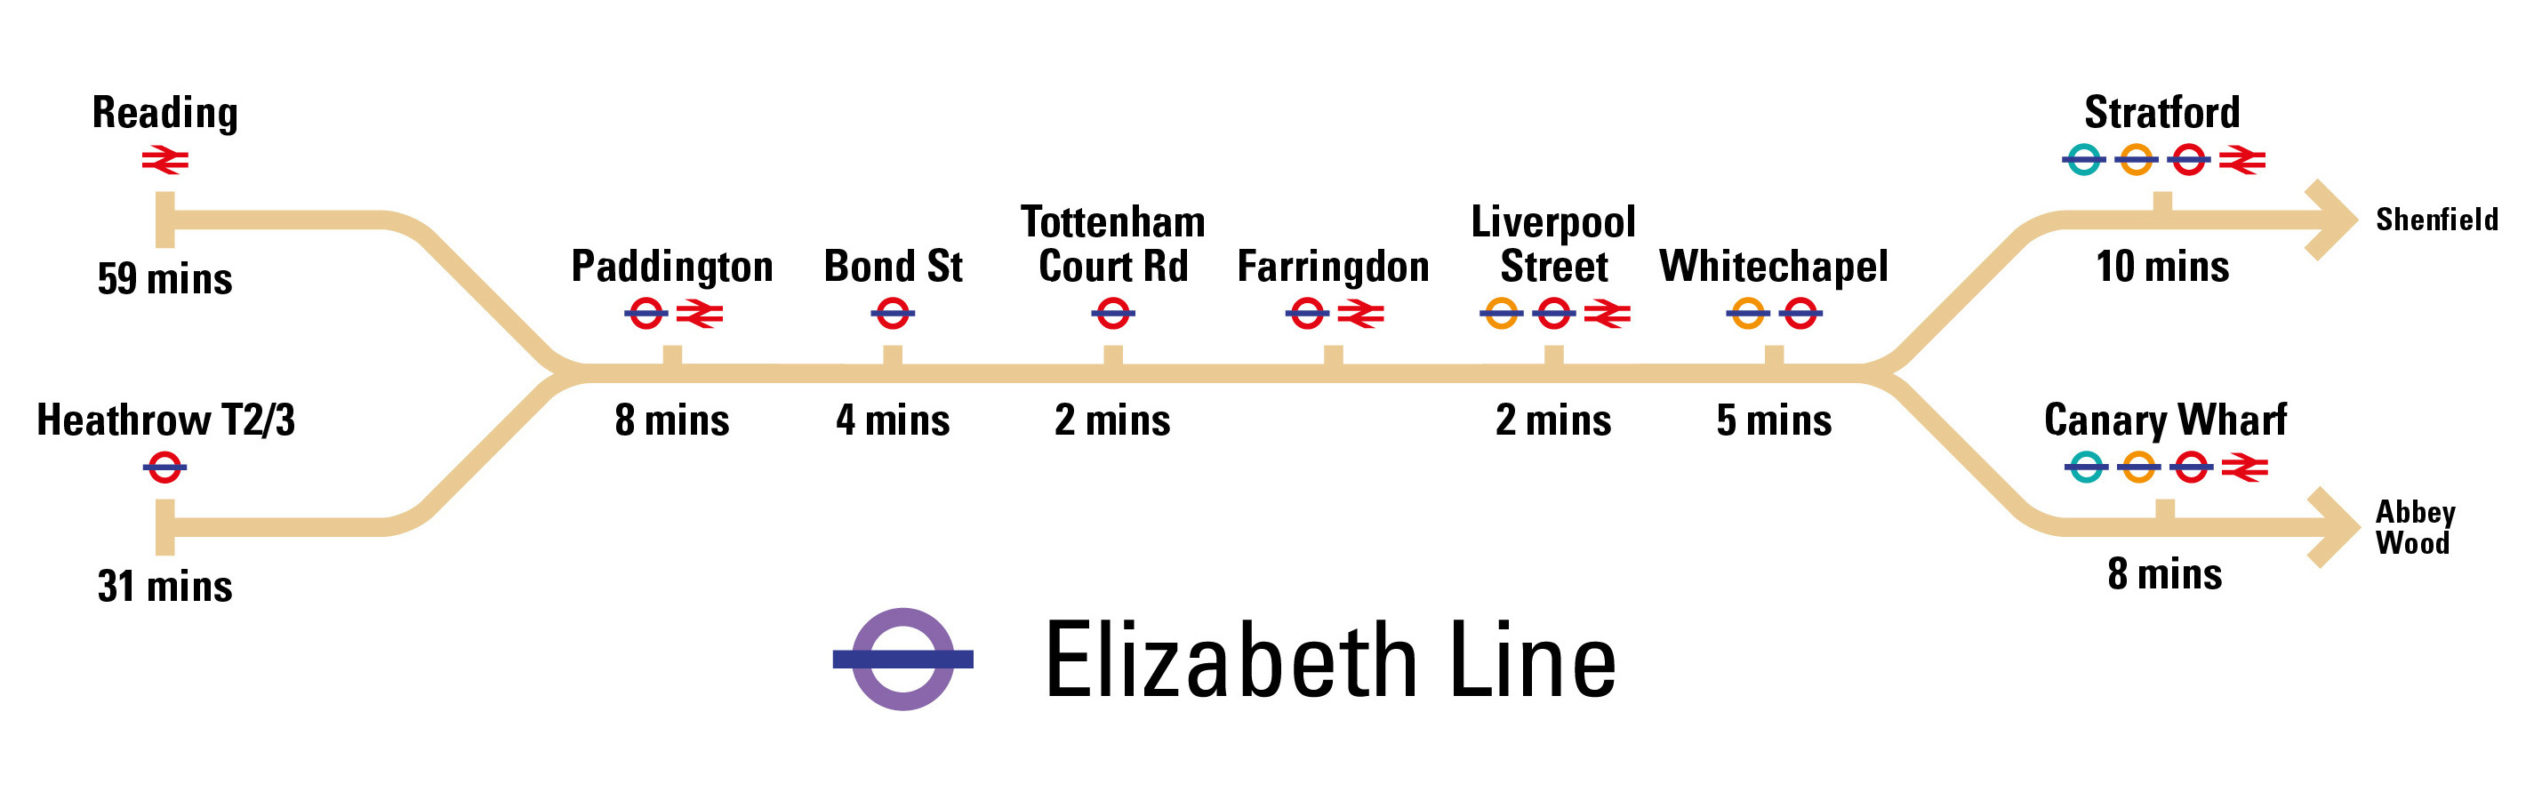 Elizabeth line mobile v2